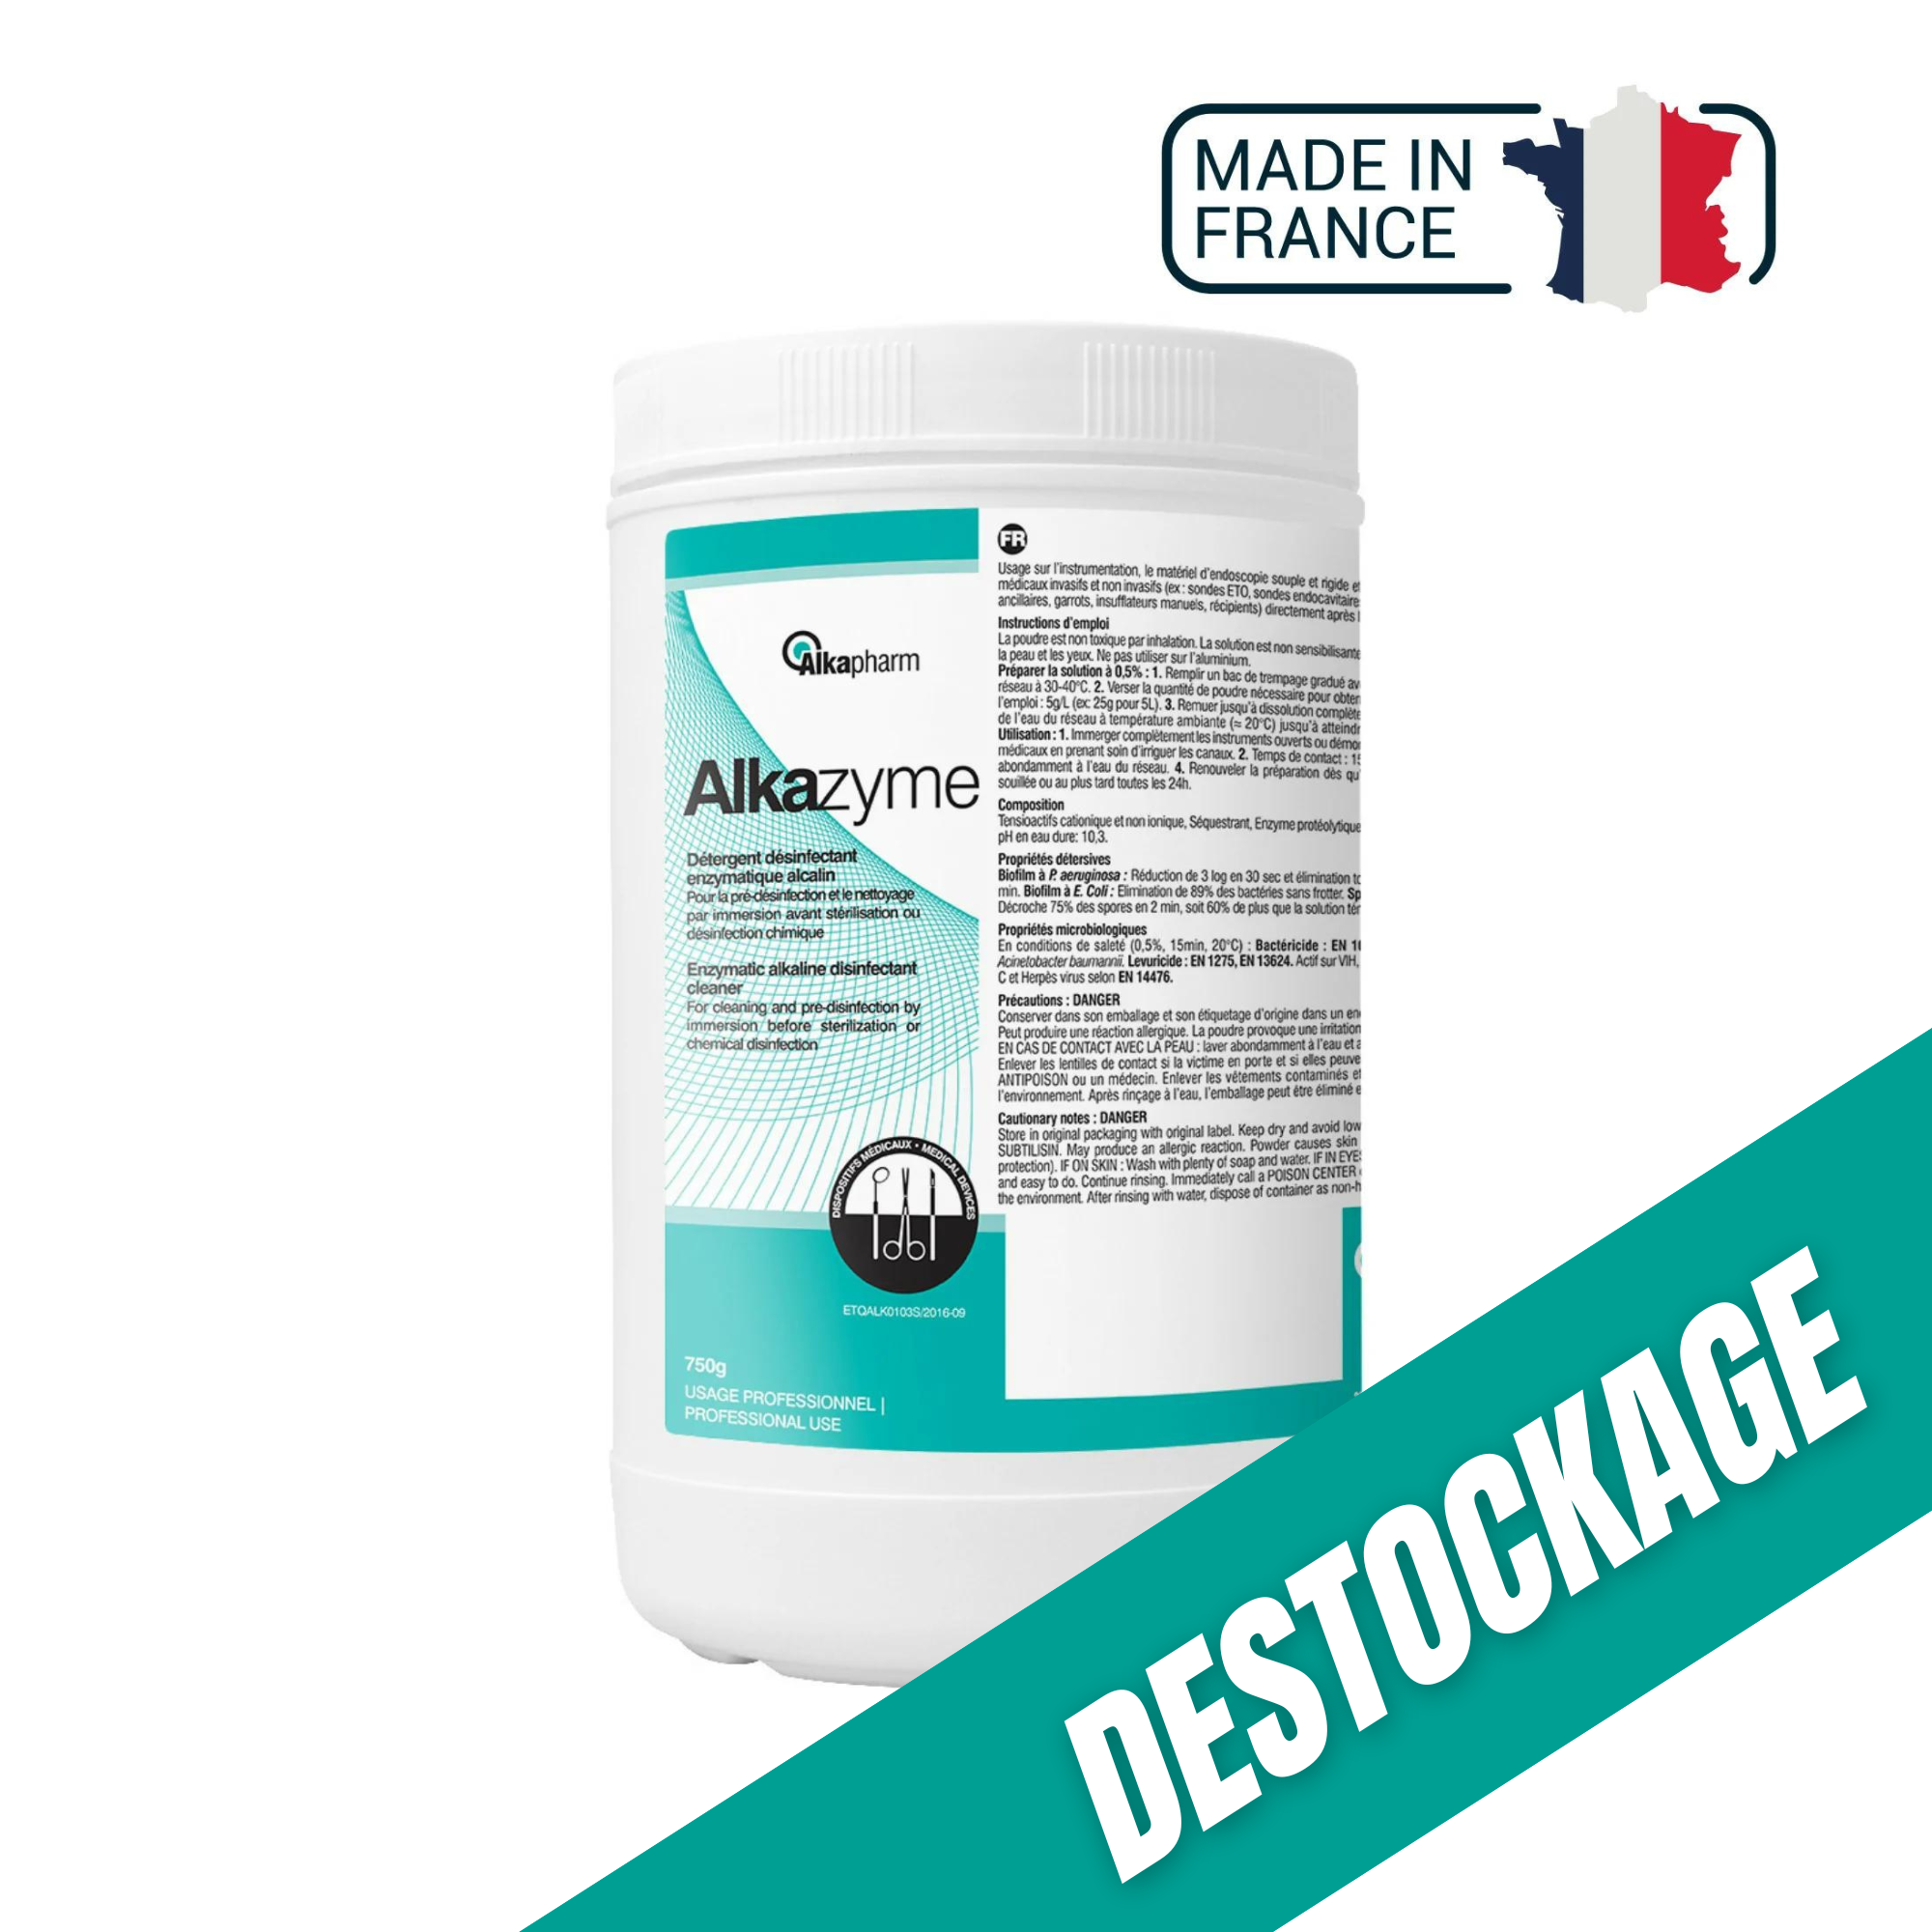 Alkazyme - Détergent désinfectant enzymatique alcalin - Pot de 750 g - Alkapharm // DESTOCKAGE